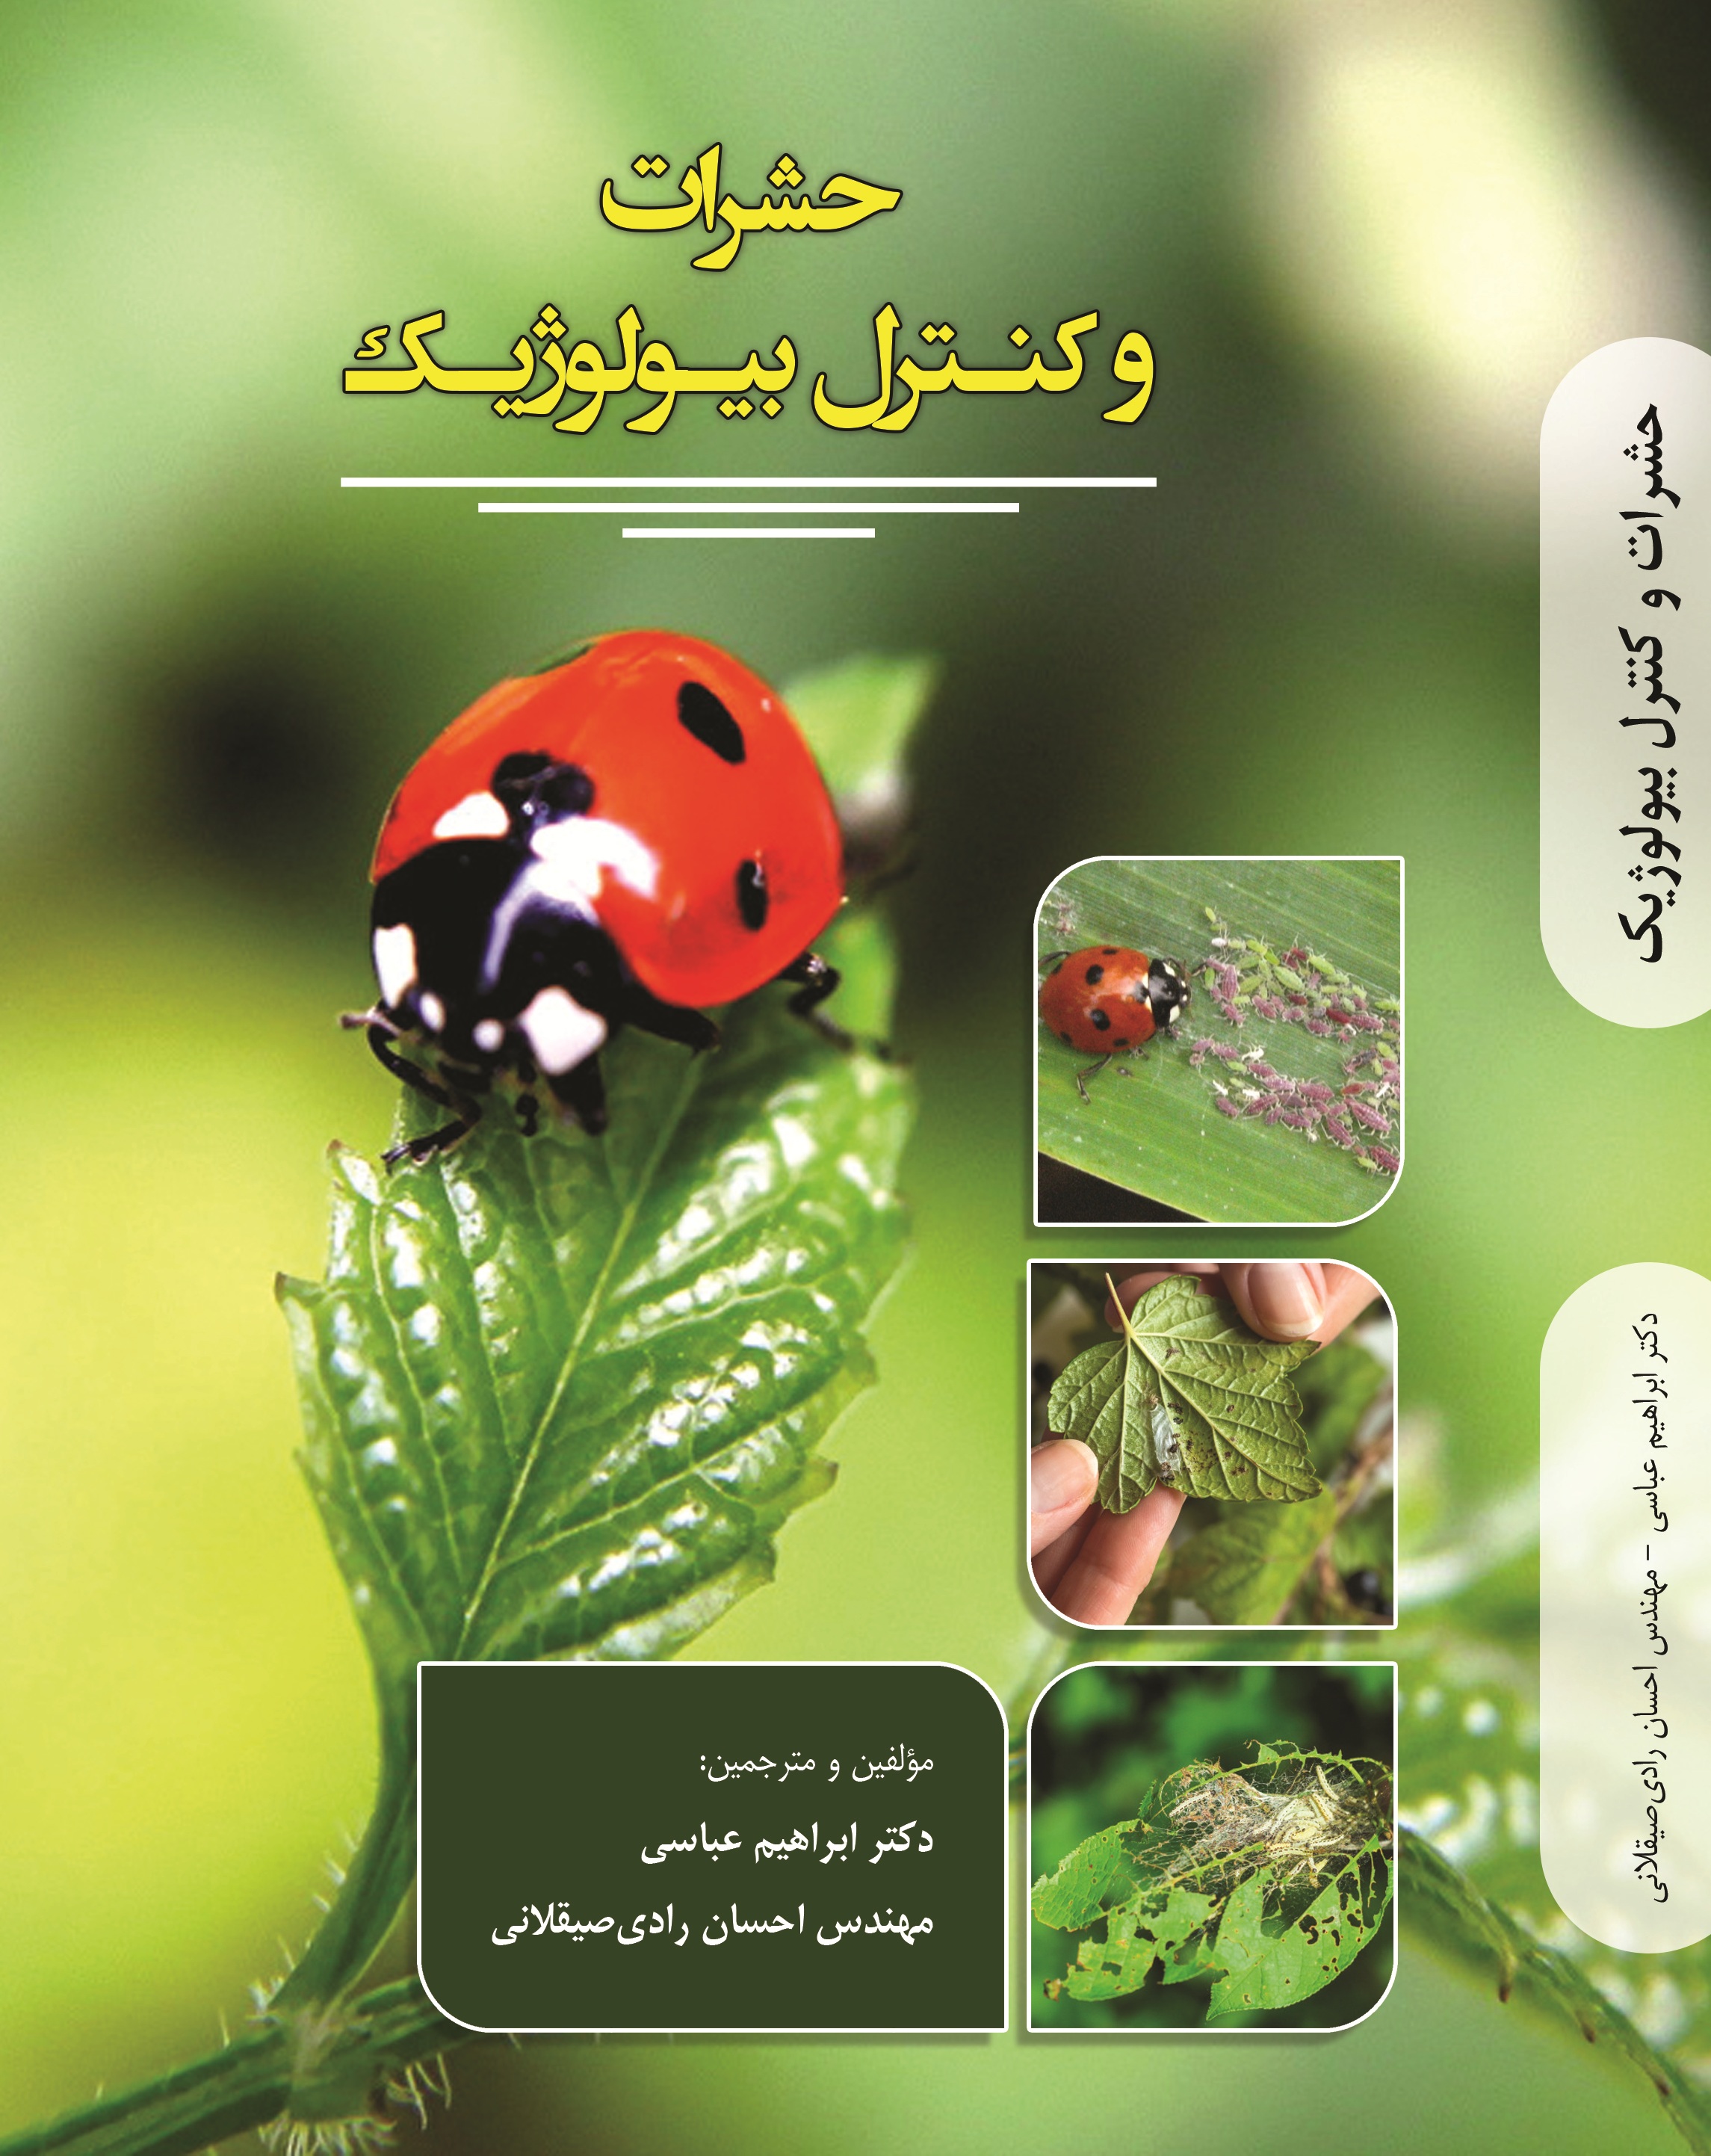 حشرات  و کنترل  بیولوژیک